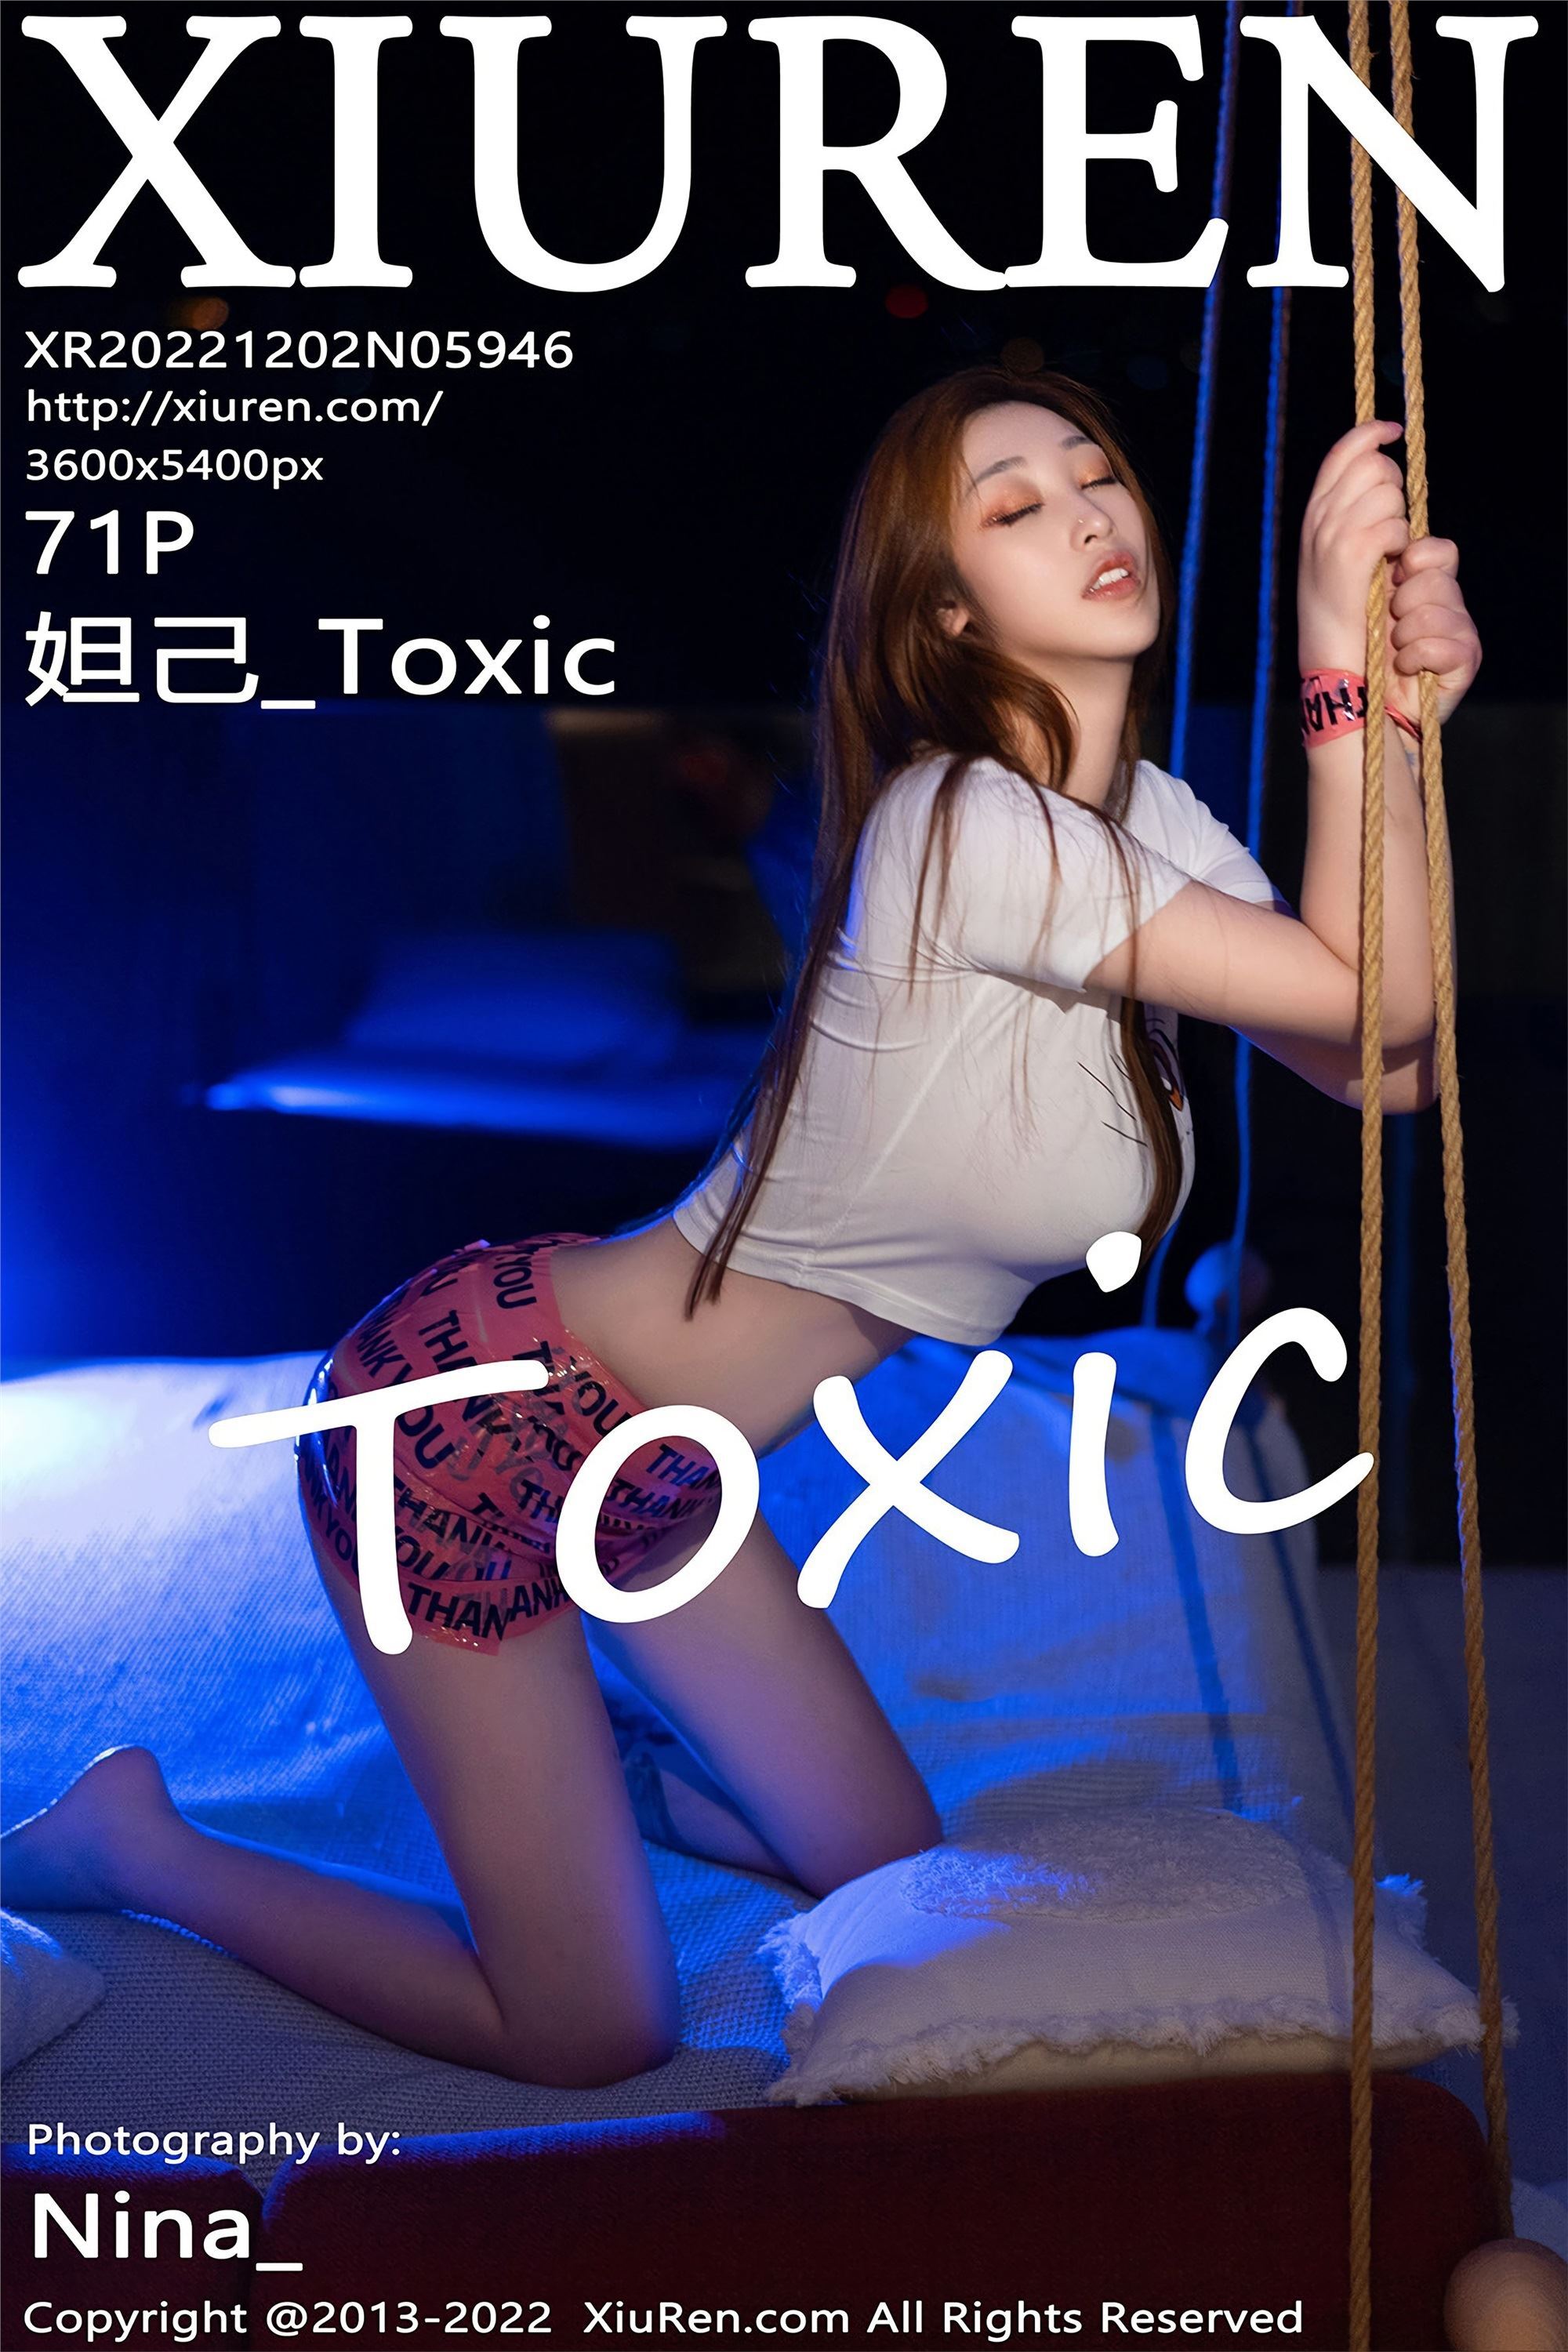 Xiuren 2022.12.02 NO.5946 Dahex_toxic